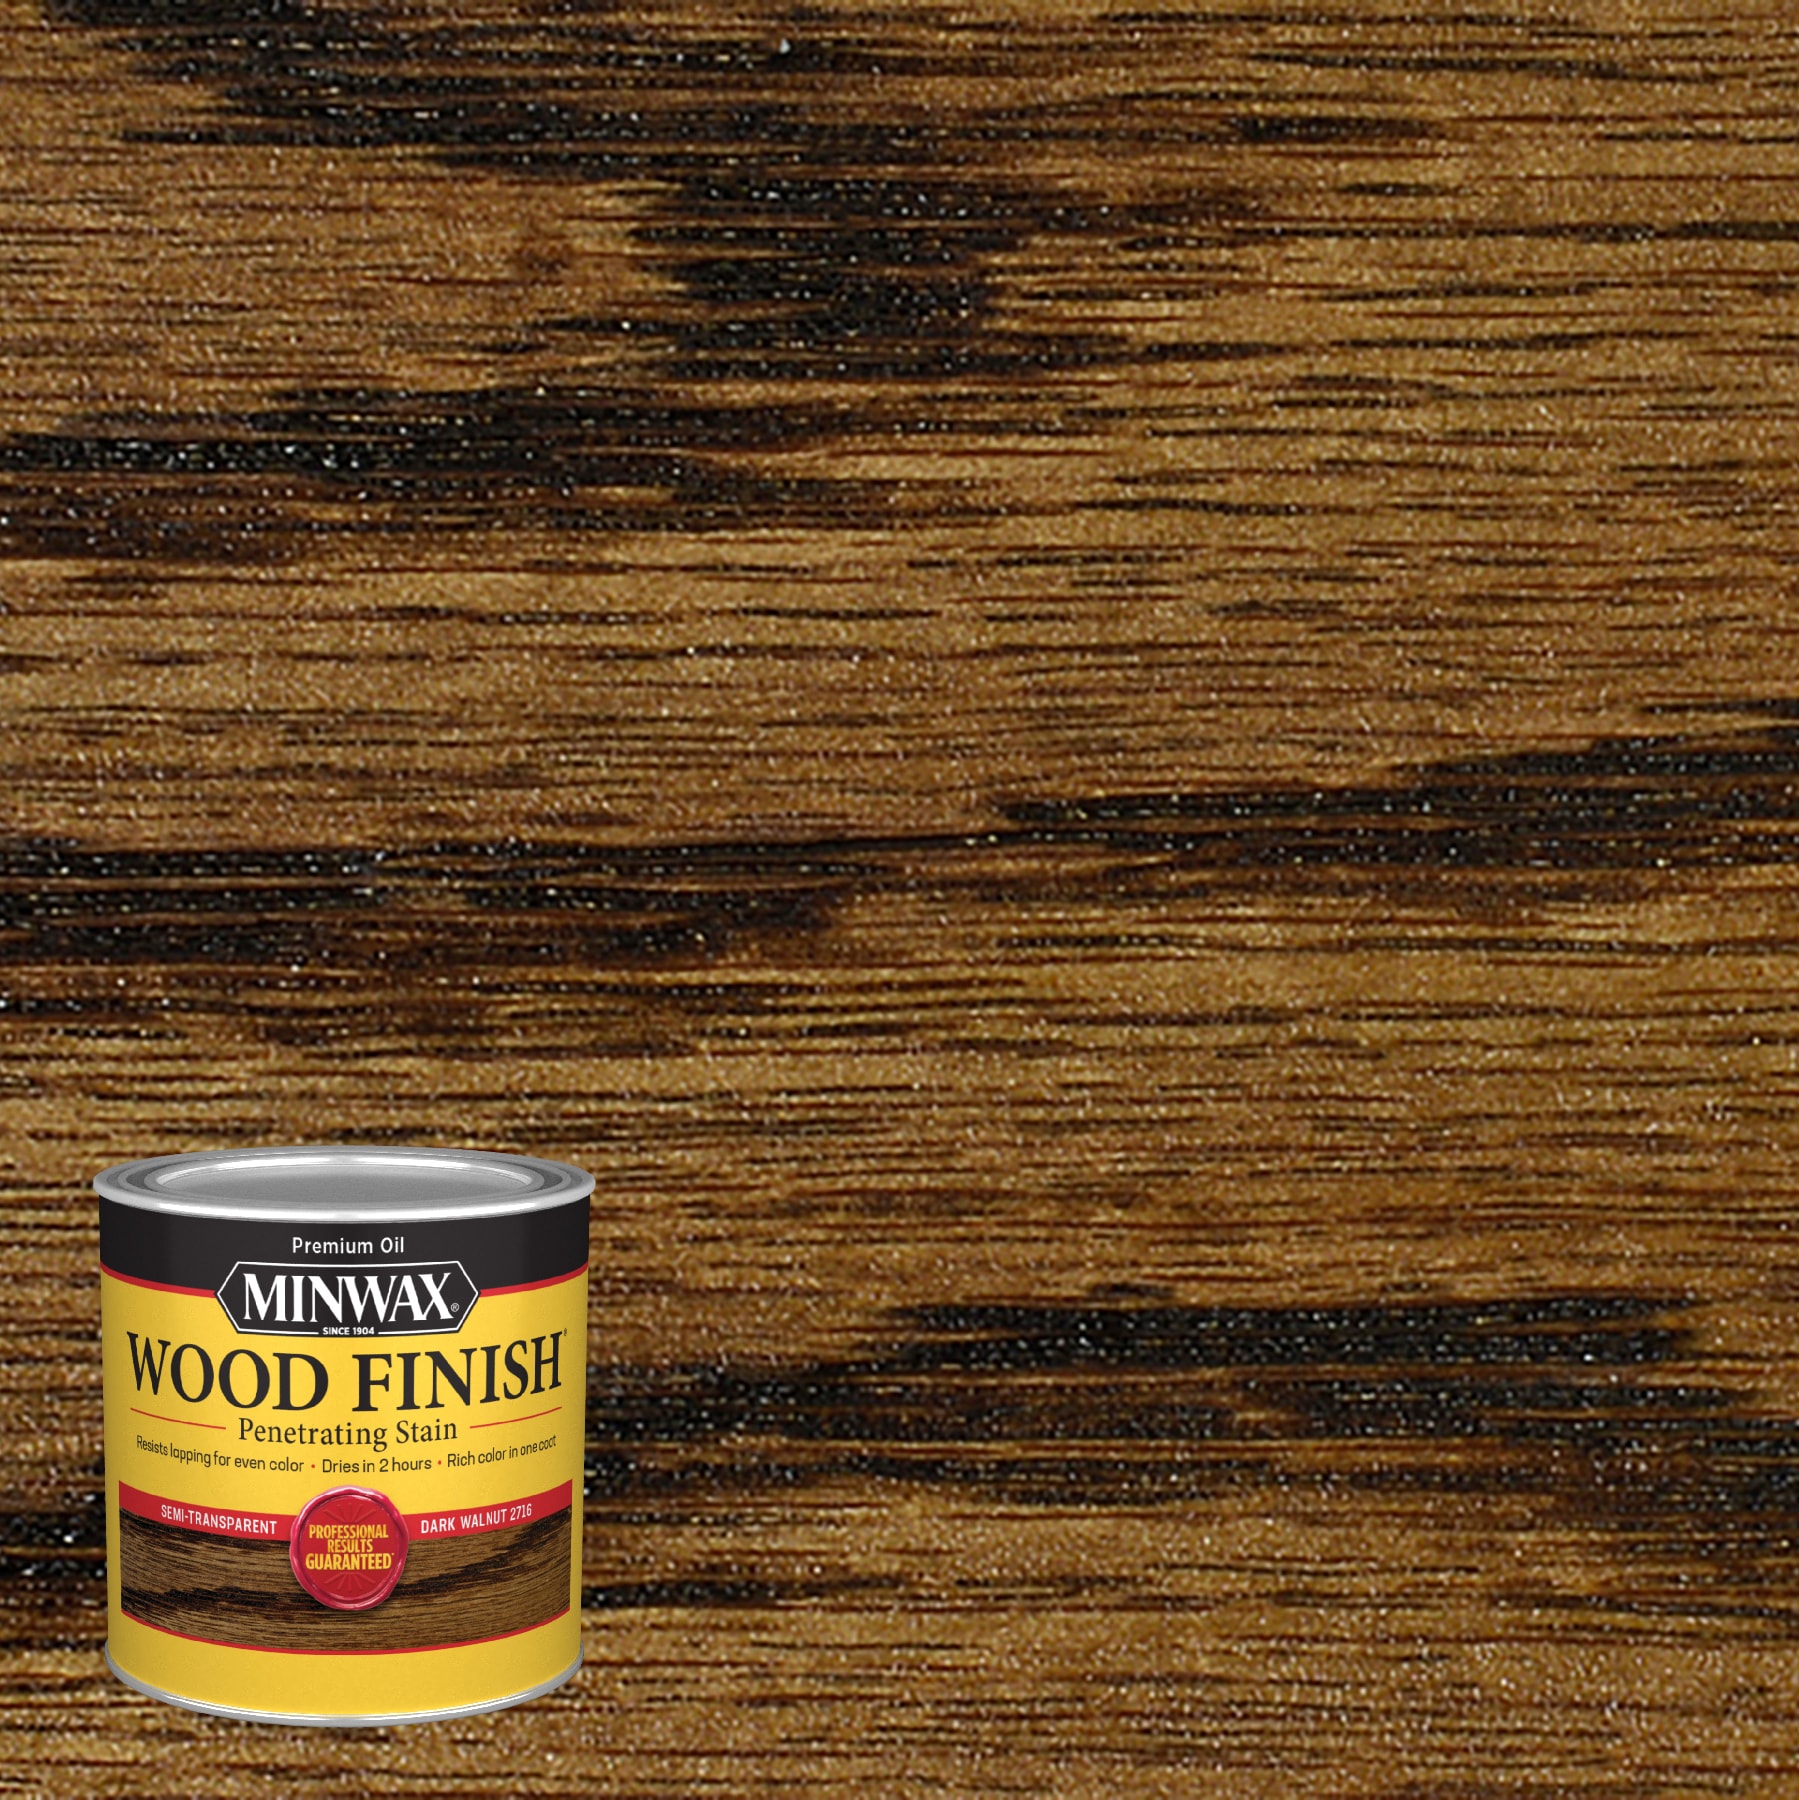 Minwax® Wood Finish Interior Stain - Sedona Red, 8 fl oz - Kroger